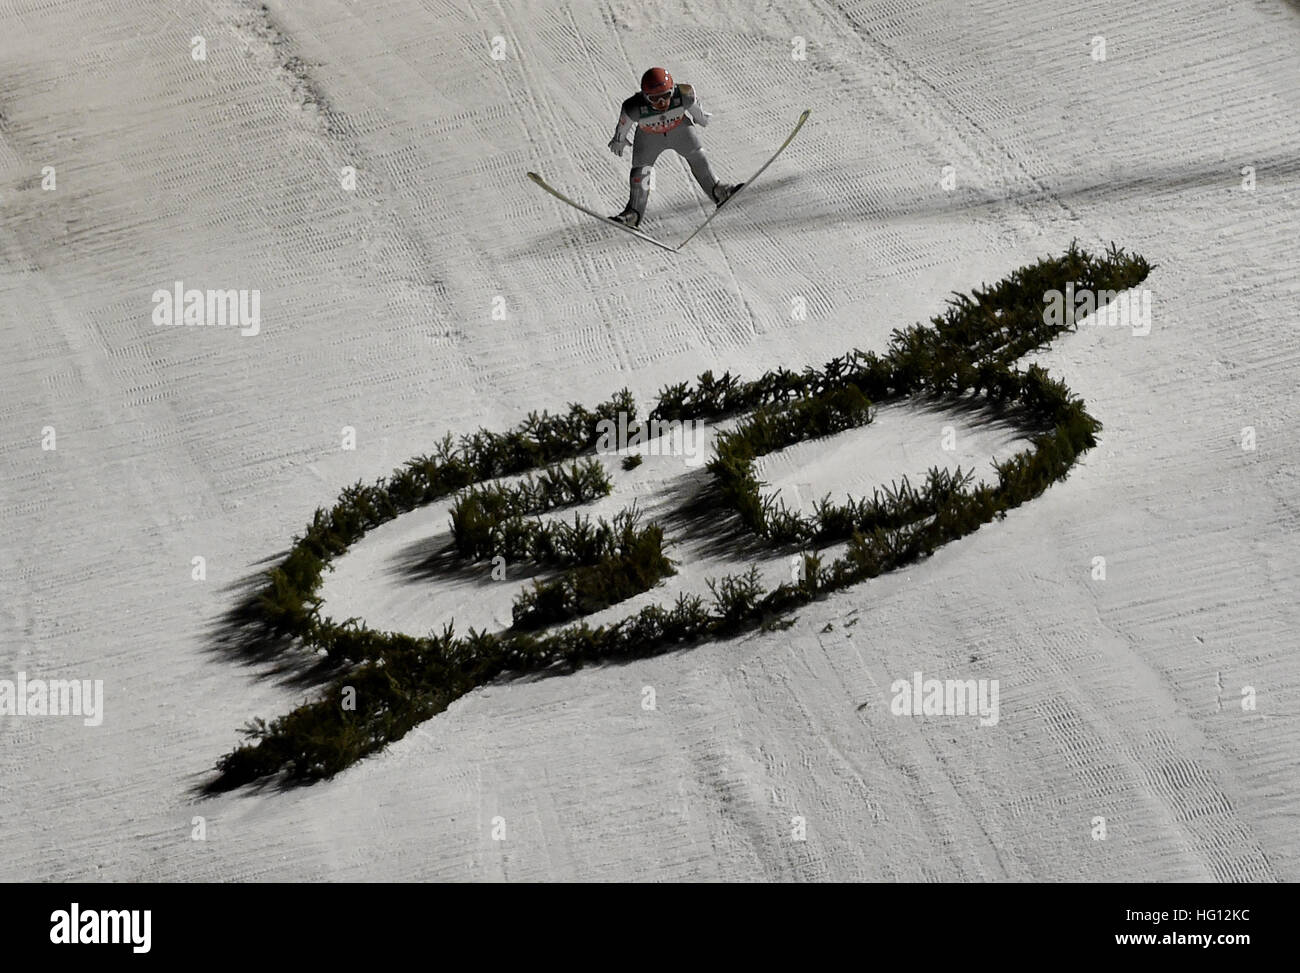 29.12.2017. Oberstdorf, Alemania. Puente de esquí alemana Severin Freund en acción durante su salto de calificación en el torneo de cuatro colinas en Oberstdorf, Alemania, el 29 de diciembre de 2016. Foto de stock